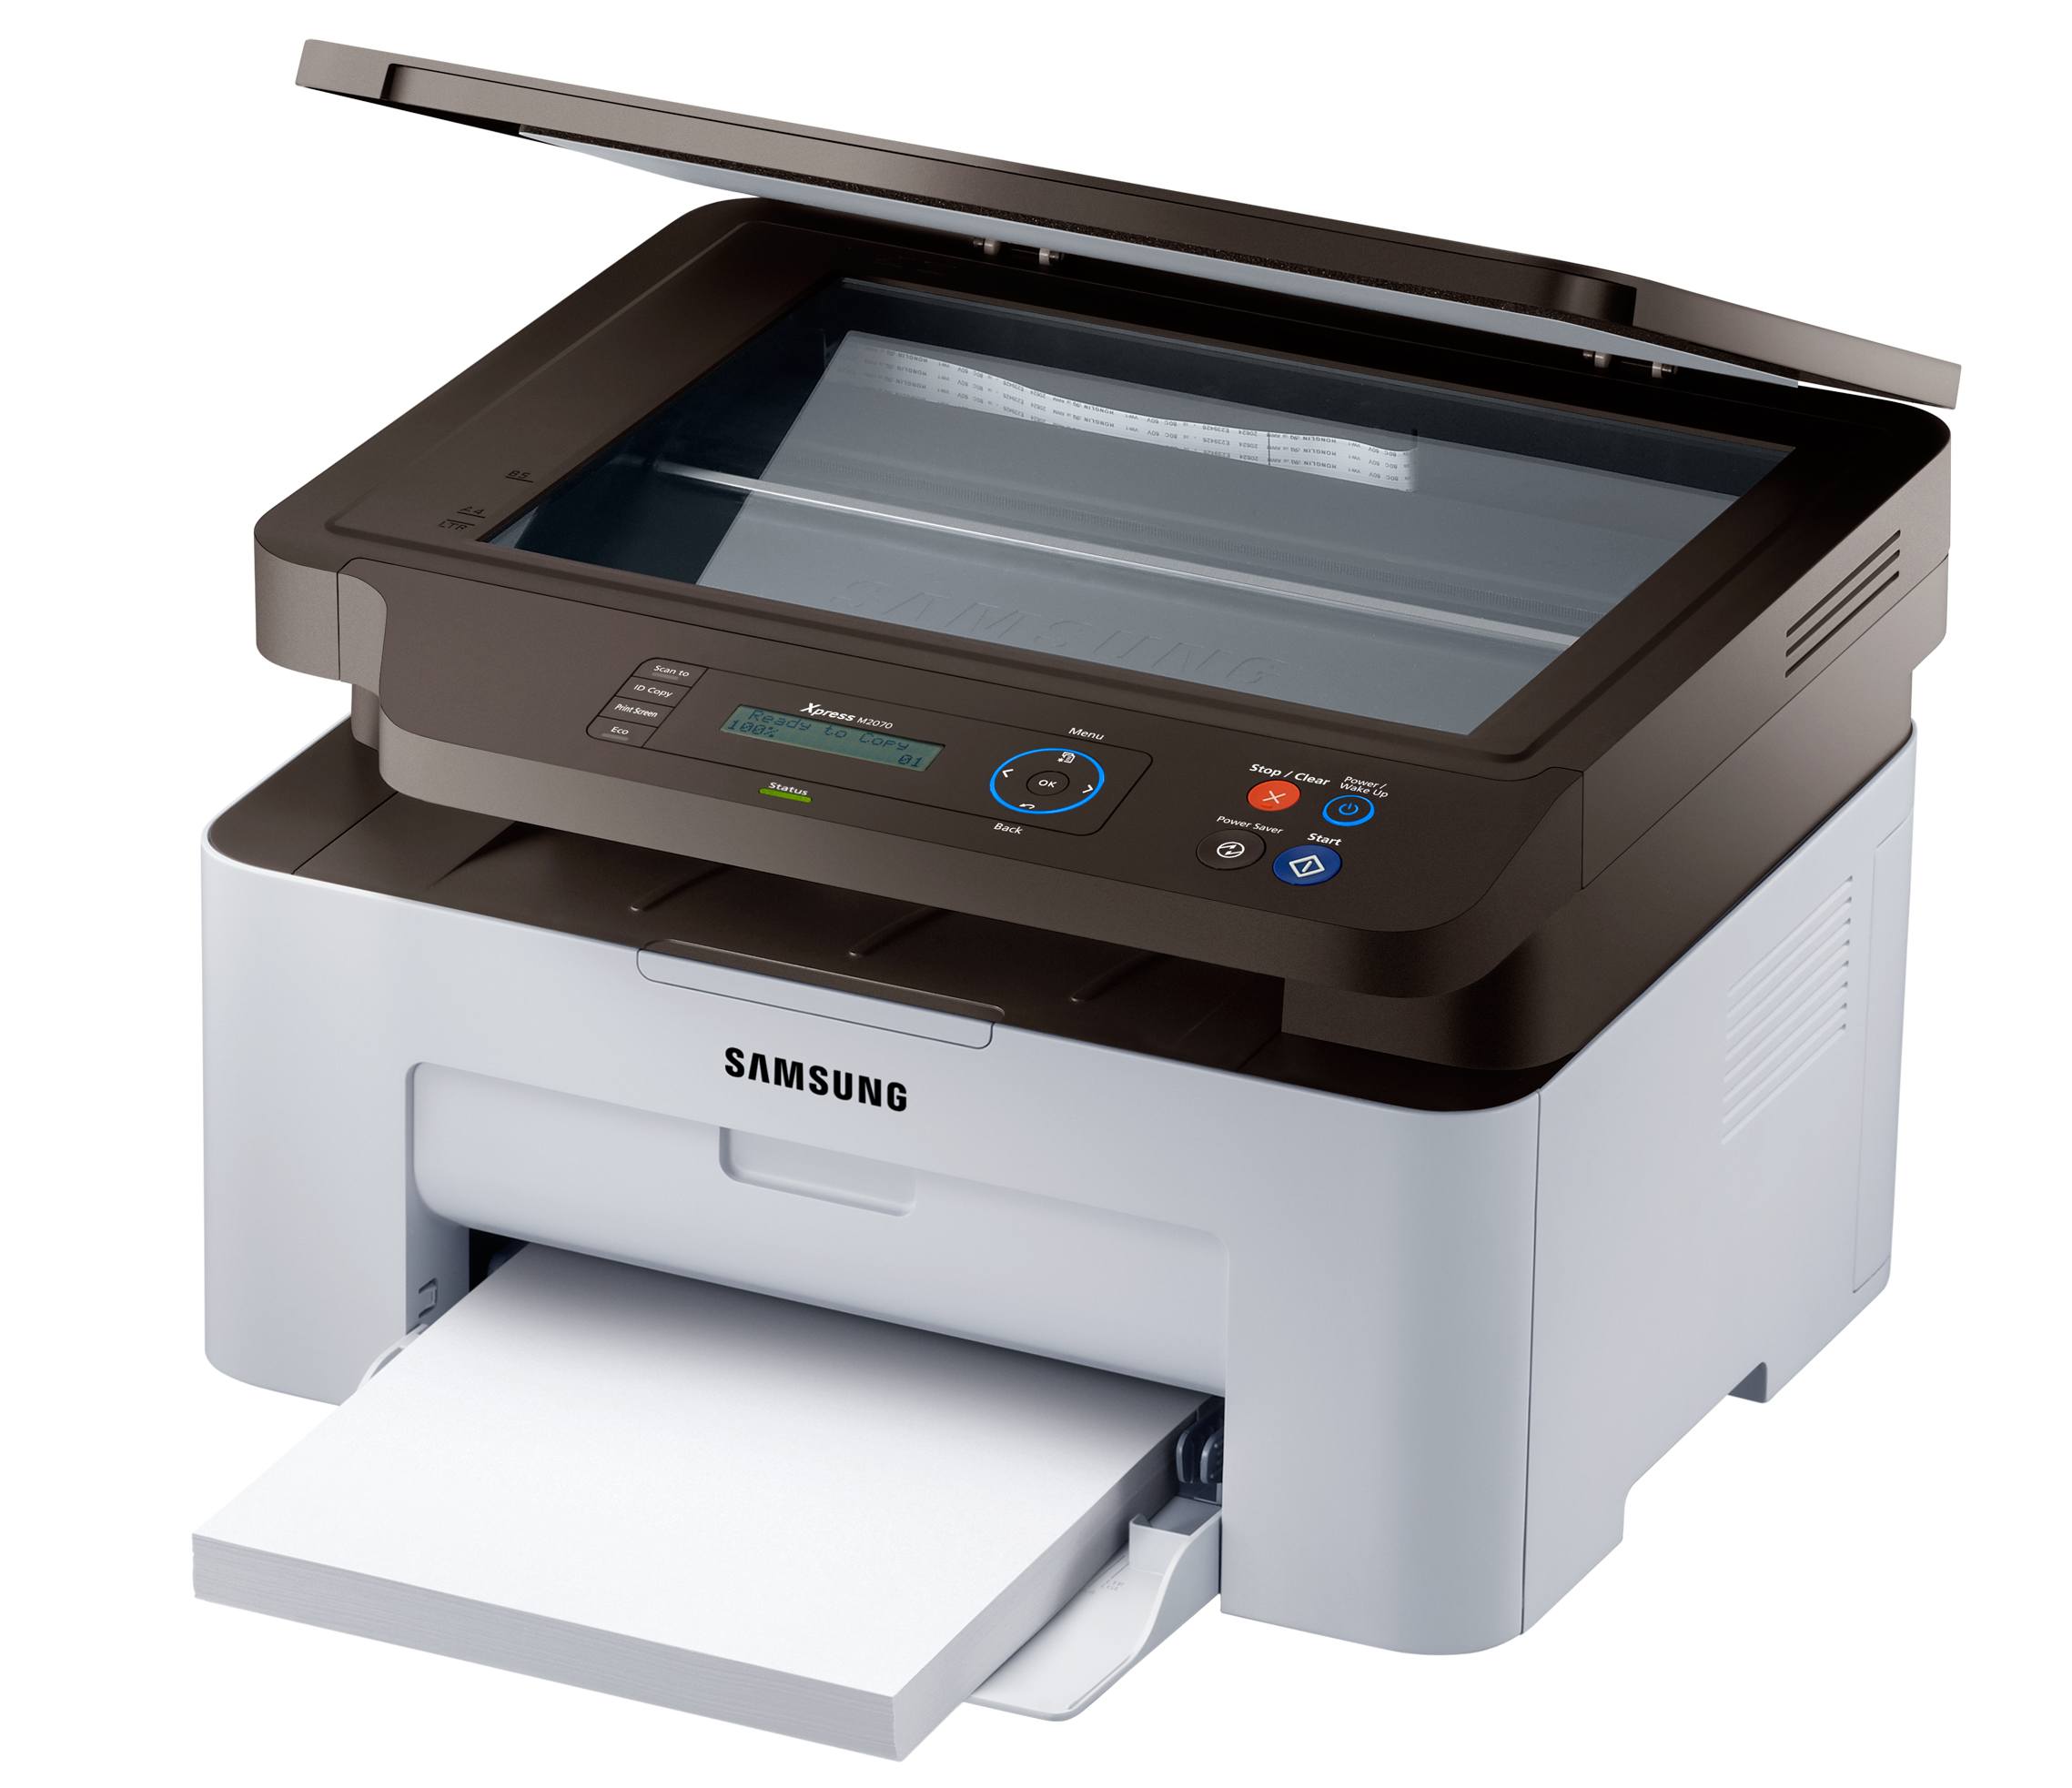 Модели лазерных принтеров. Принтер Samsung Xpress m2070. МФУ Samsung 2070w. Принтер Samsung Xpress m2020. Принтер самсунг Xpress m2070w.